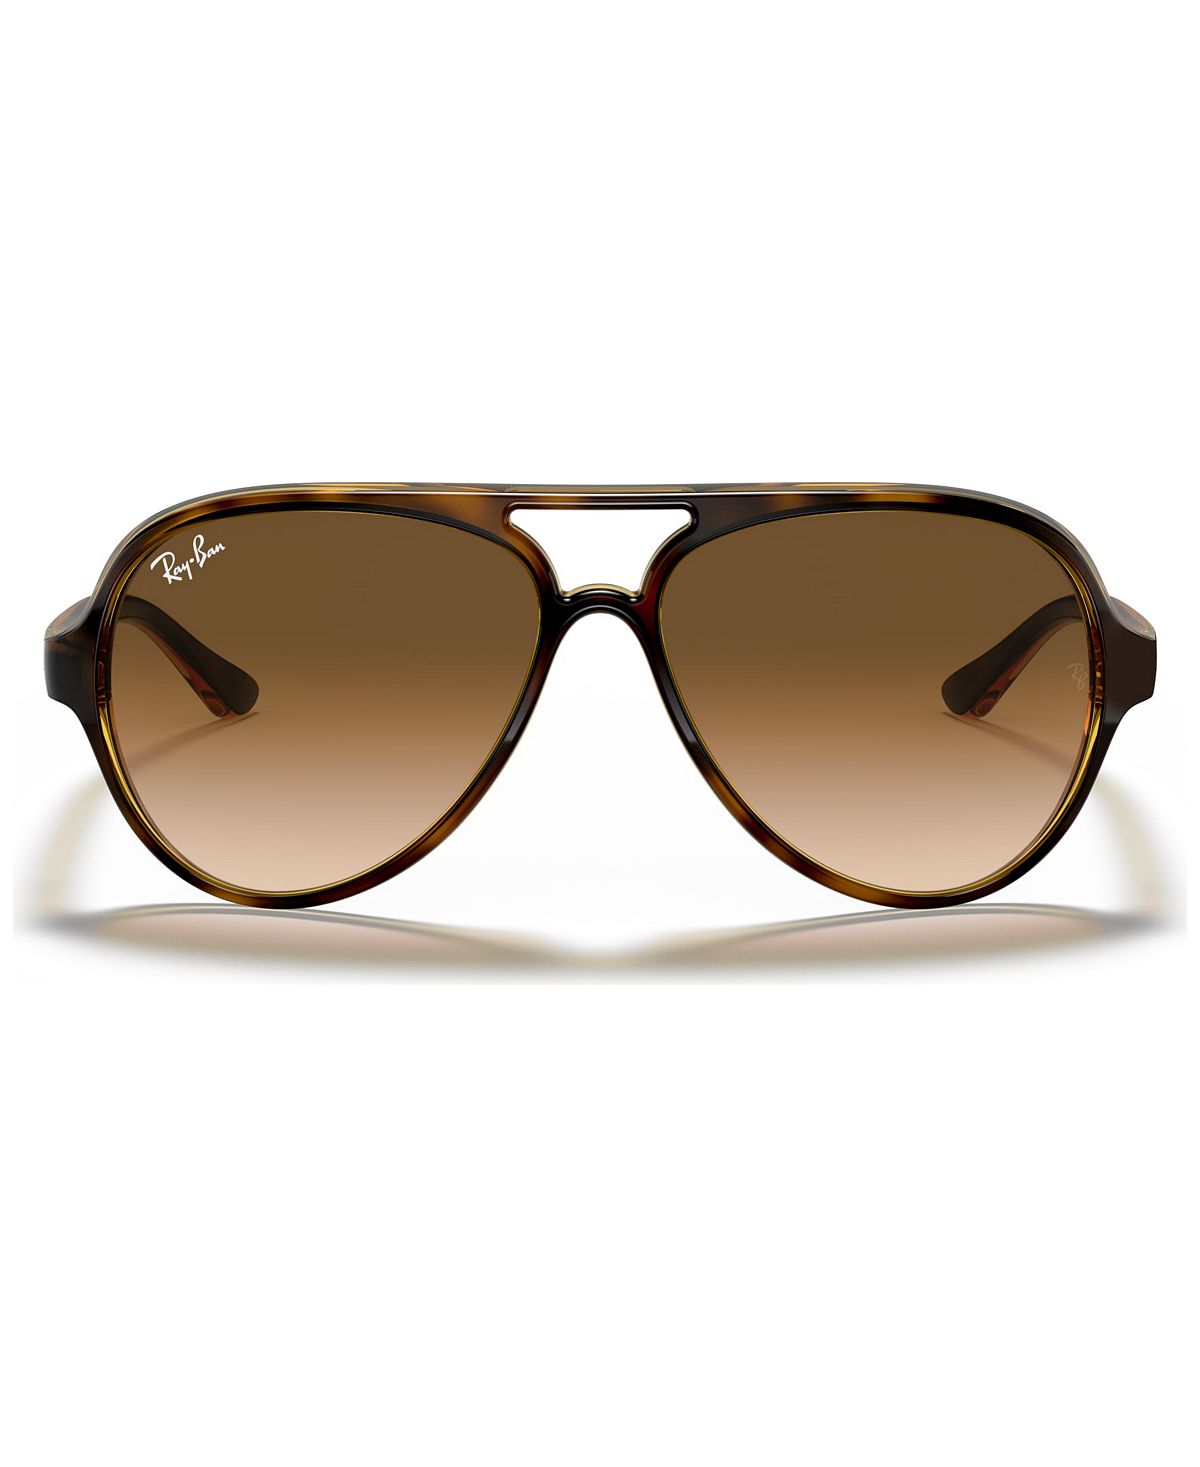 солнцезащитные очки ray ban авиаторы оправа металл складные с защитой от уф золотой Солнцезащитные очки, rb4125 cats 5000 Ray-Ban